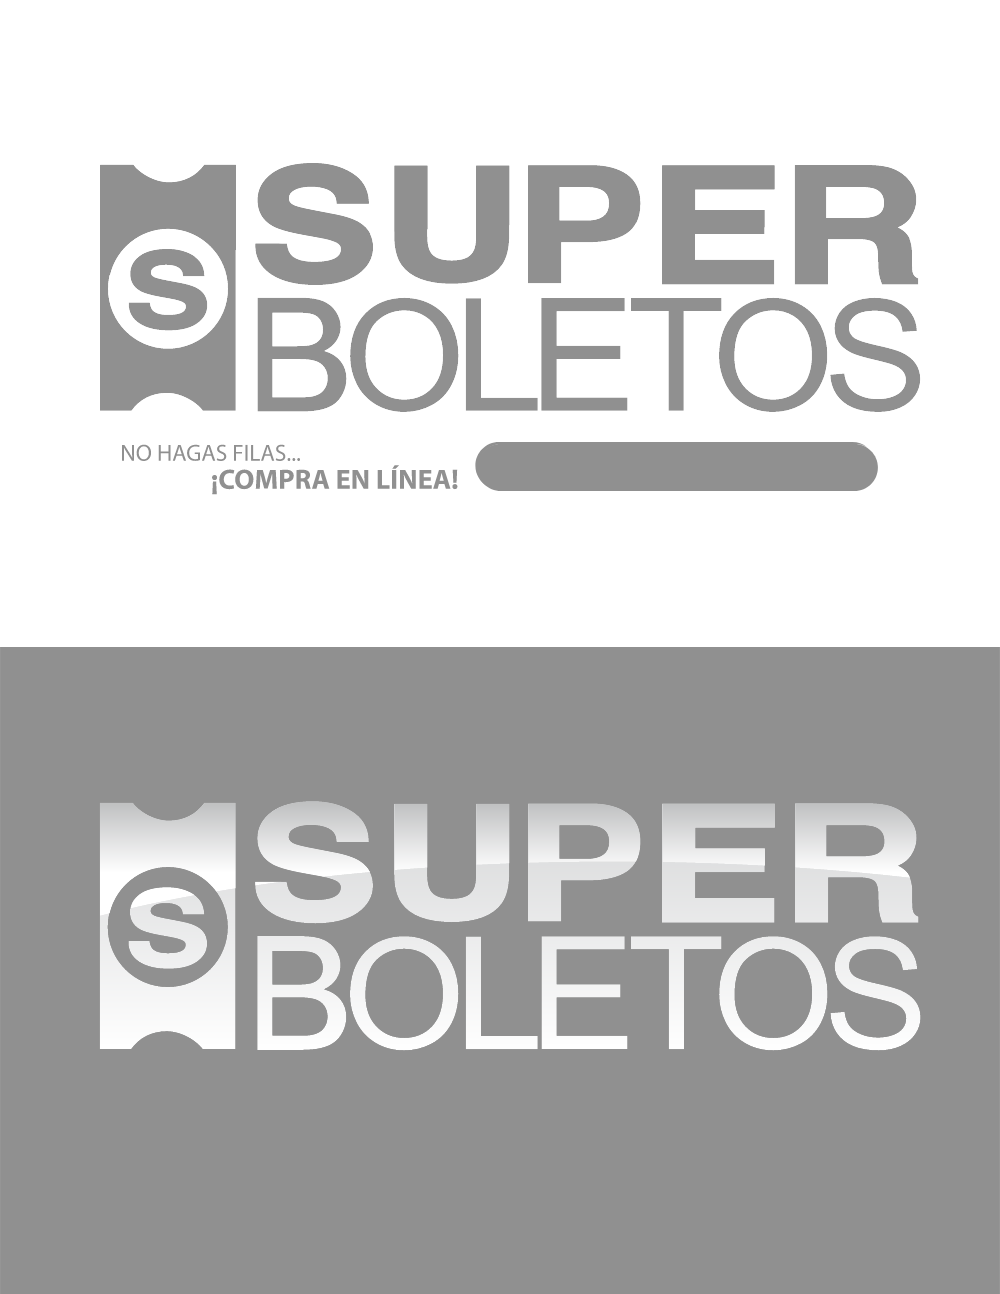 Super Boletos Logo PNG logo